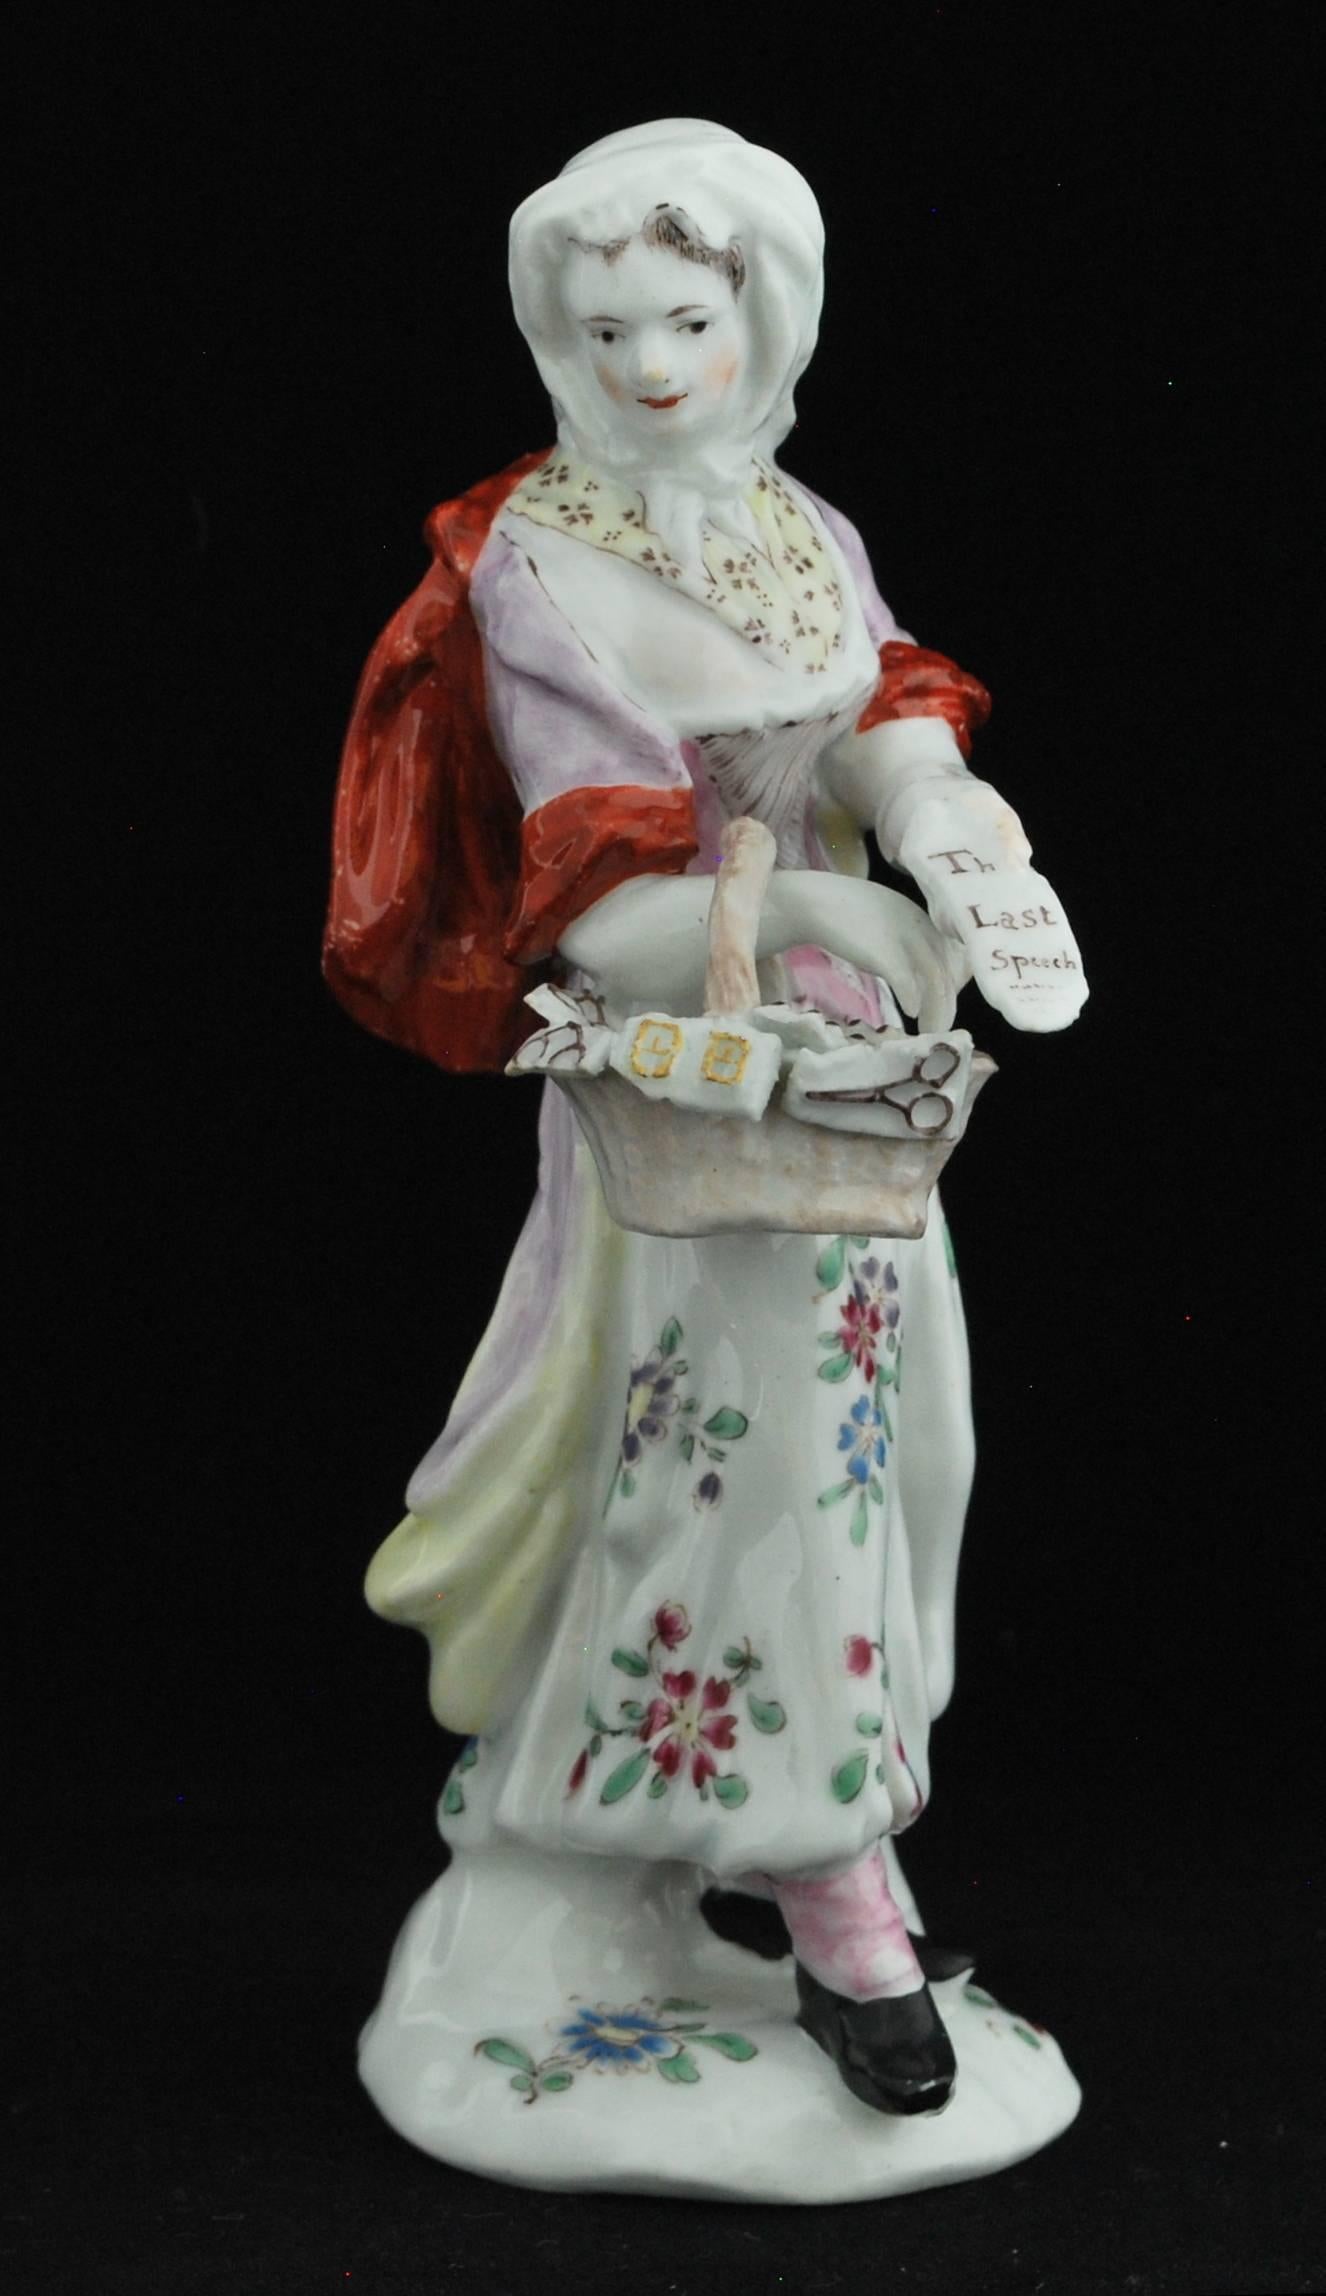 Sur une base de monticule décorée de brins floraux peints. Elle porte une blouse lavée rose pâle et mauve avec des manches et une cape rouge fer, un stomacher mauve pâle et rose et une chemise blanche à motifs, un foulard noué sur la tête et une